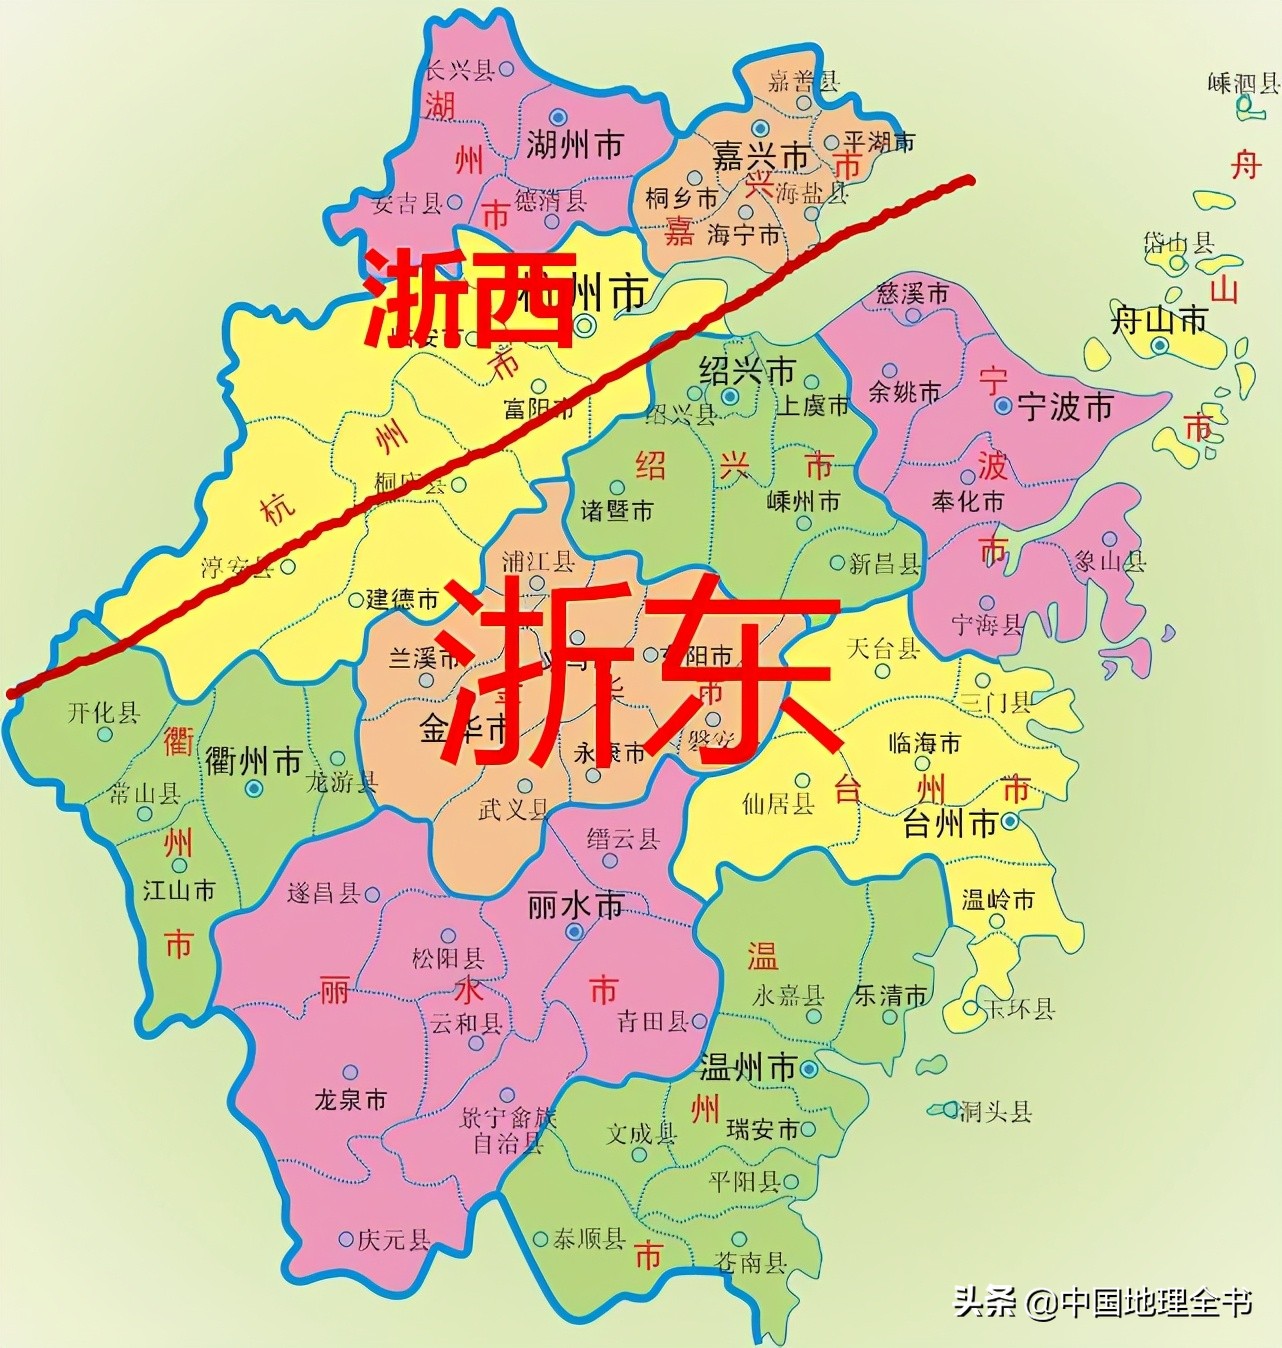 温州;狭义上的浙南只包括温州;浙北主要包括湖州,嘉兴,杭州,绍兴,宁波